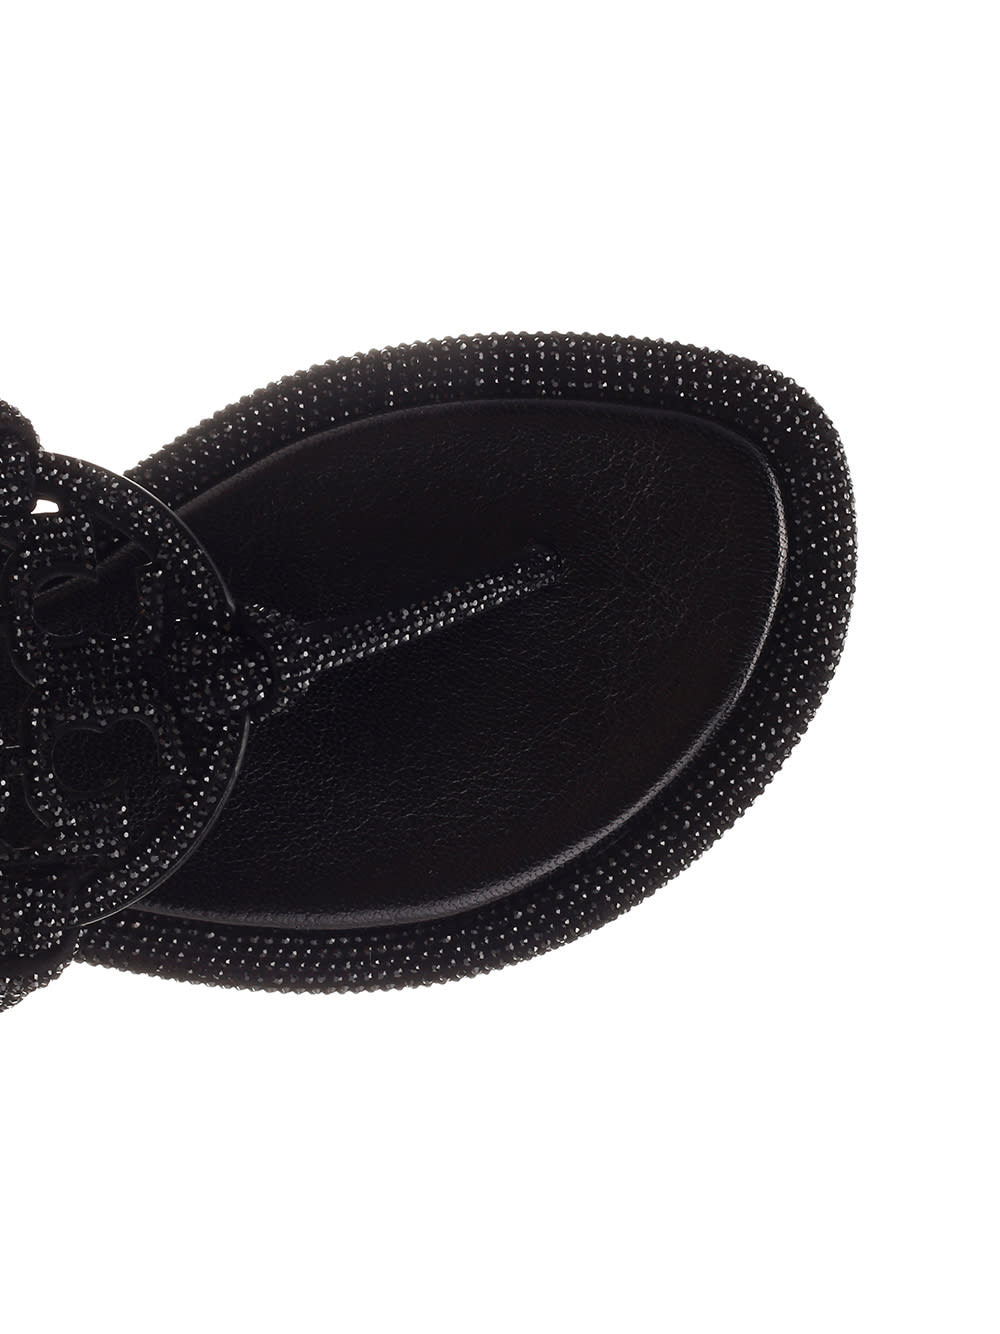 Shop Tory Burch Miller Embellished Sandals In Black